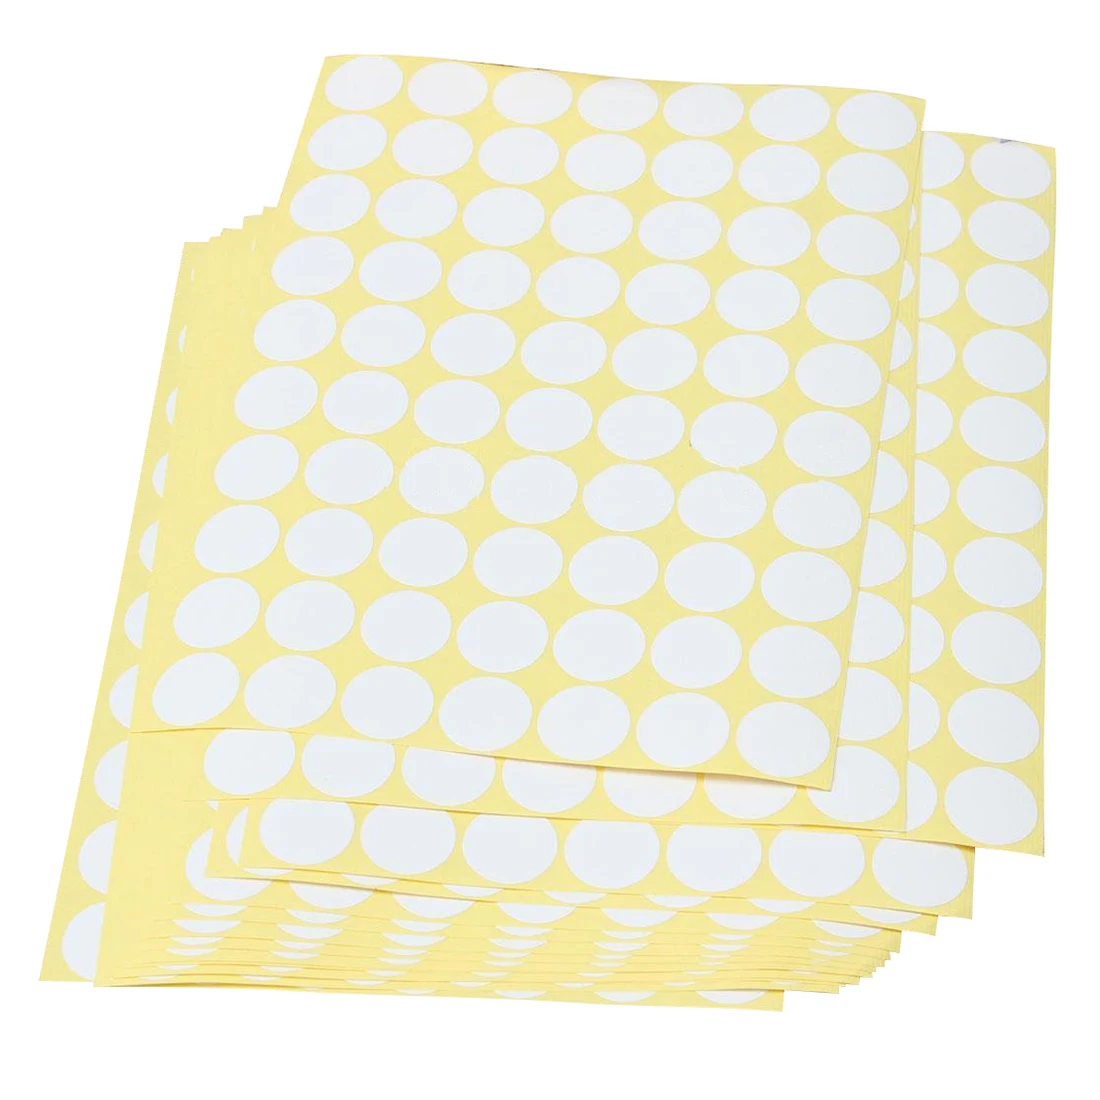 19 мм круги круглые кодовые наклейки самоклеющиеся липкие этикетки белые для детей - Цвет: White